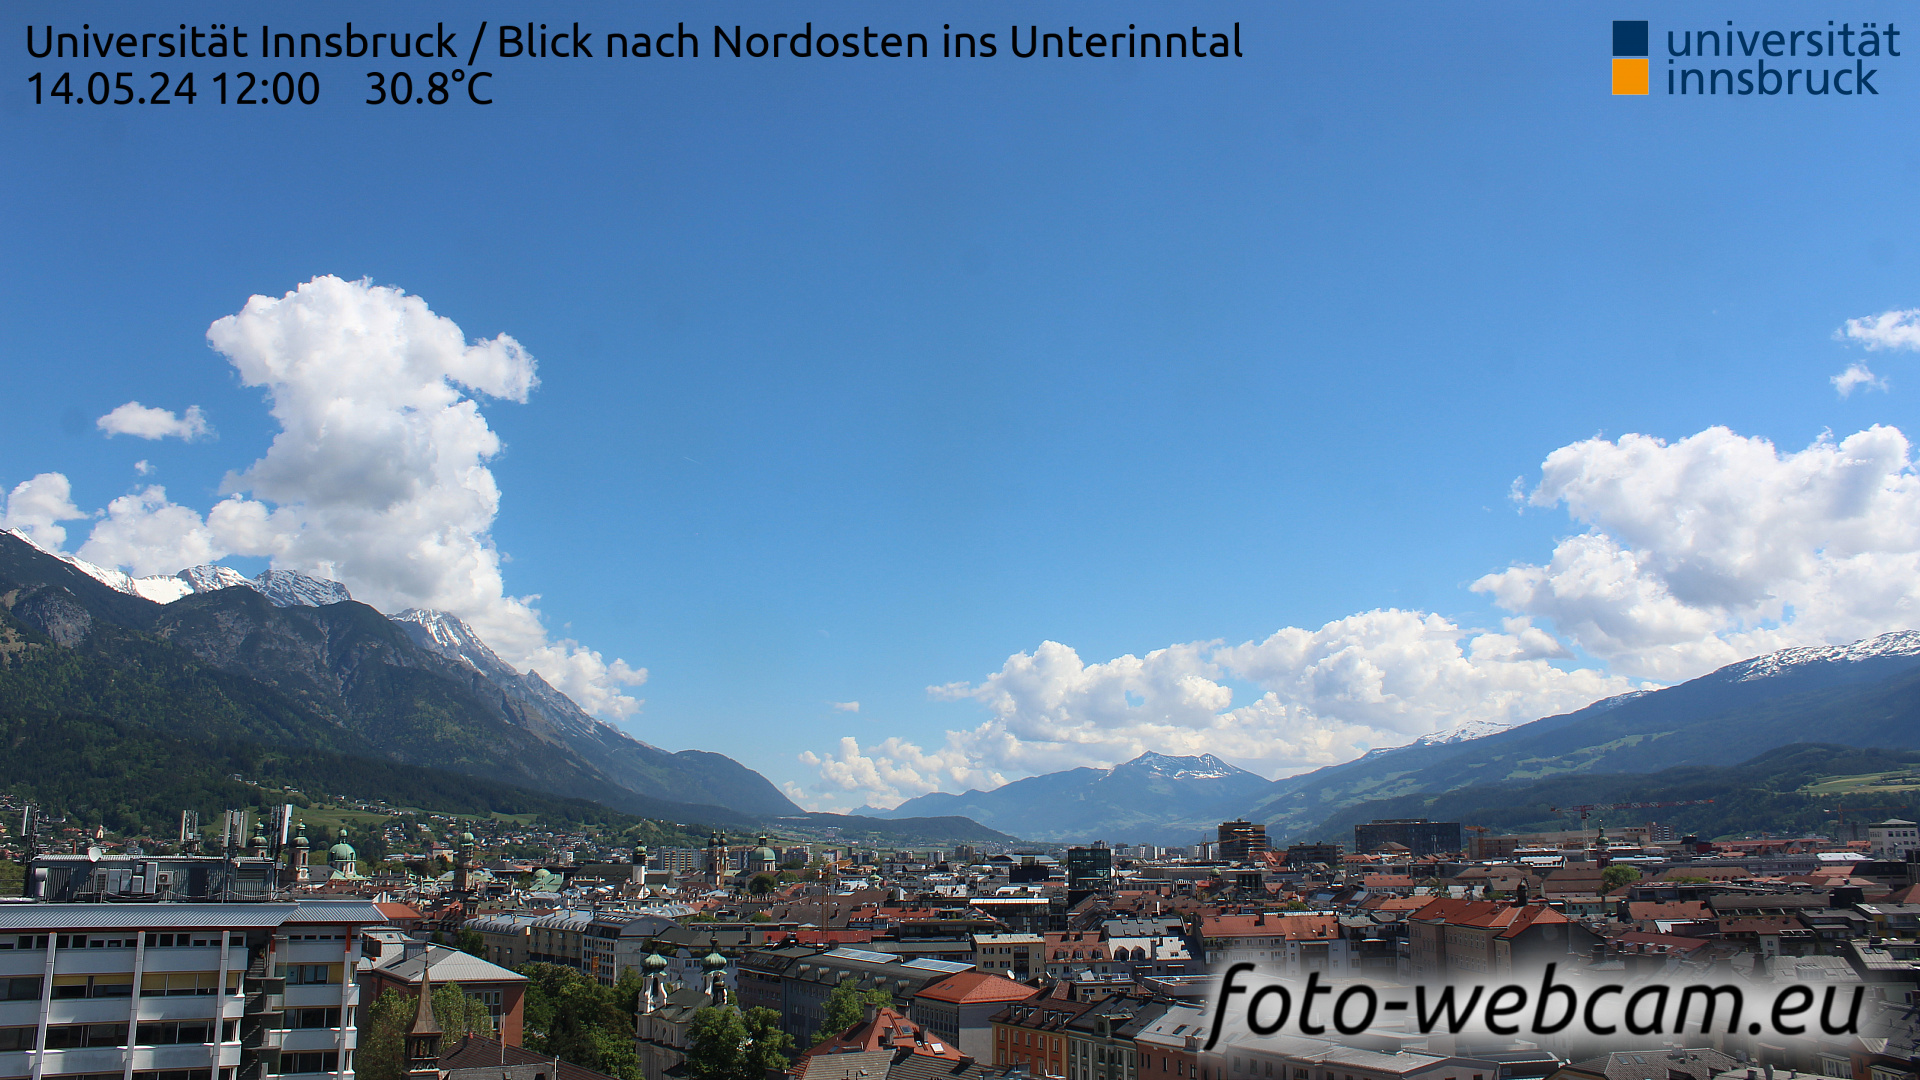 Innsbruck Thu. 12:06